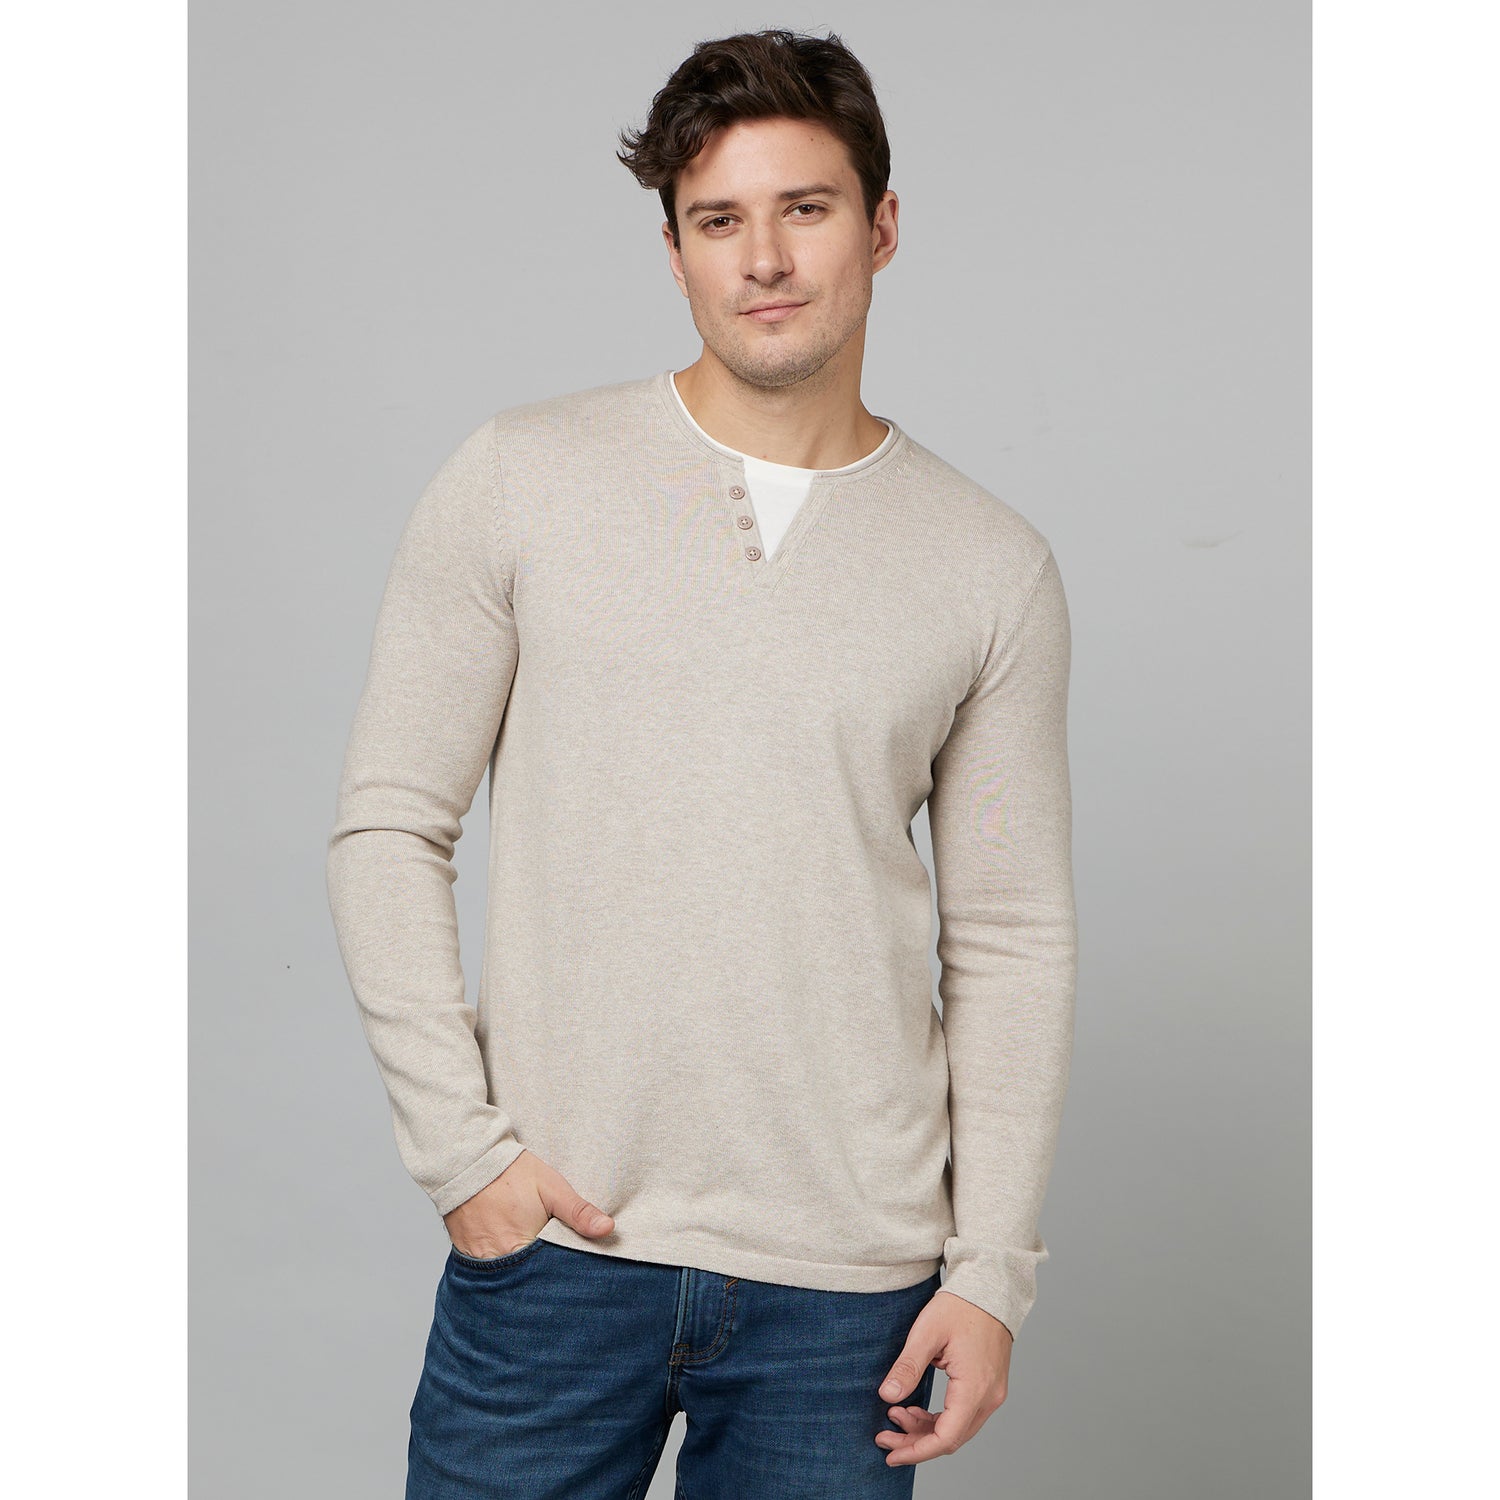 Beige Henley Neck Long Sleeves Cotton T-Shirt (FELANOIN)